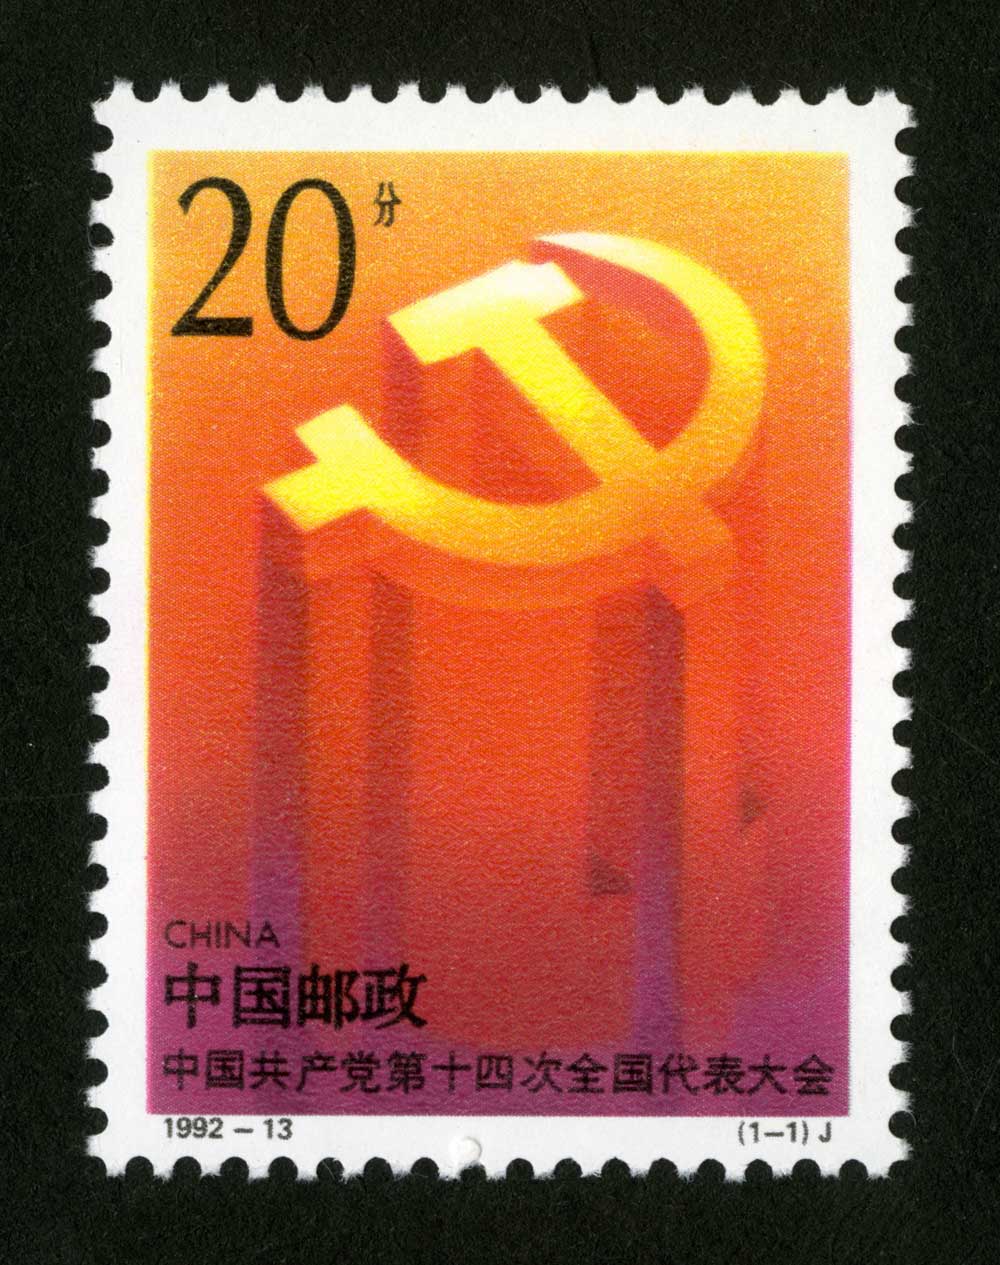 1992-13 中国共产党第十四次全国代表大会邮票